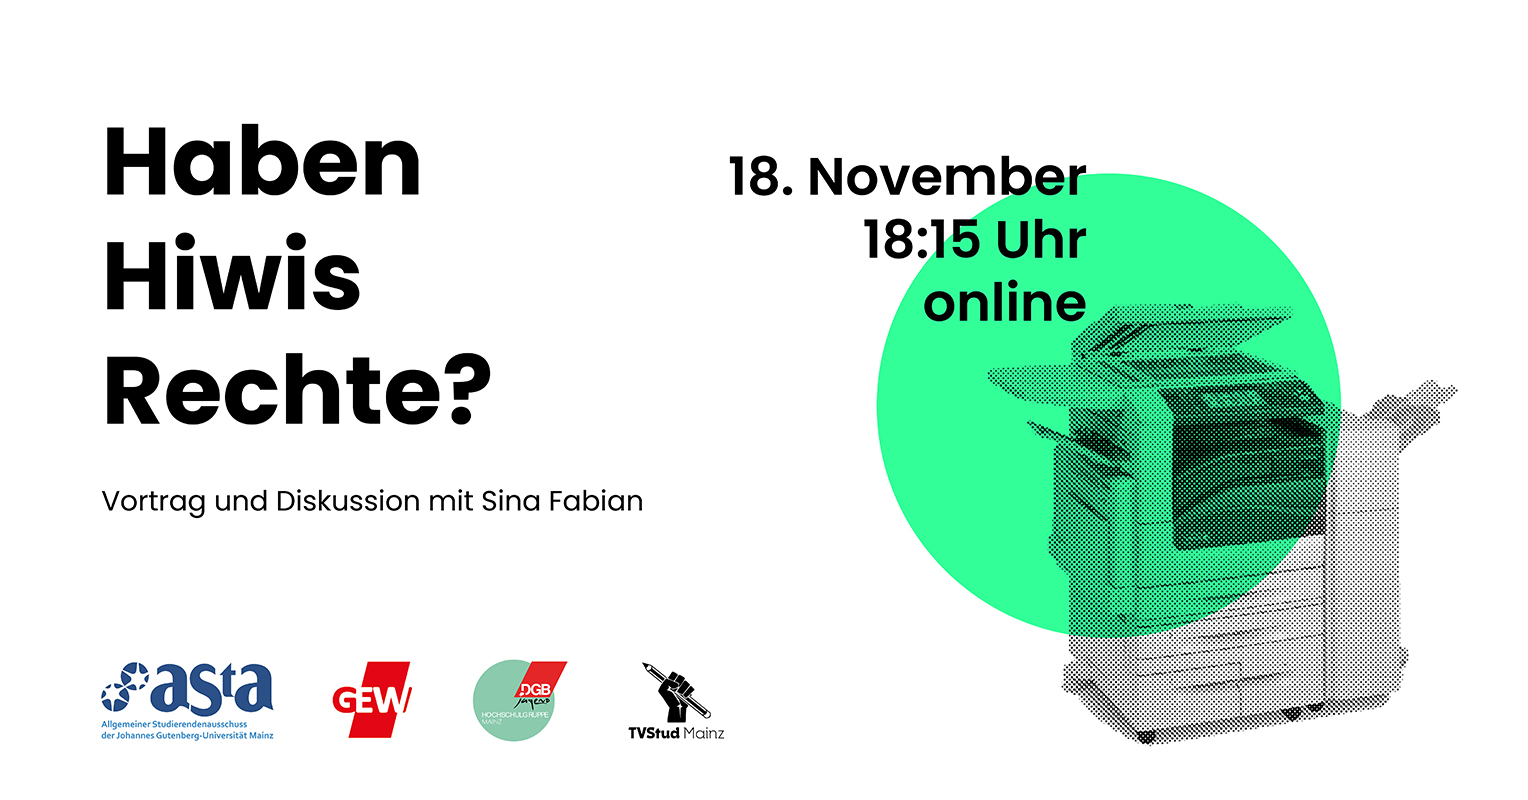 Haben Hiwis Rechte? Vortrag und Diskussion mit Sina Fabian am 18. November, 18.15 online auf BigBlueButton